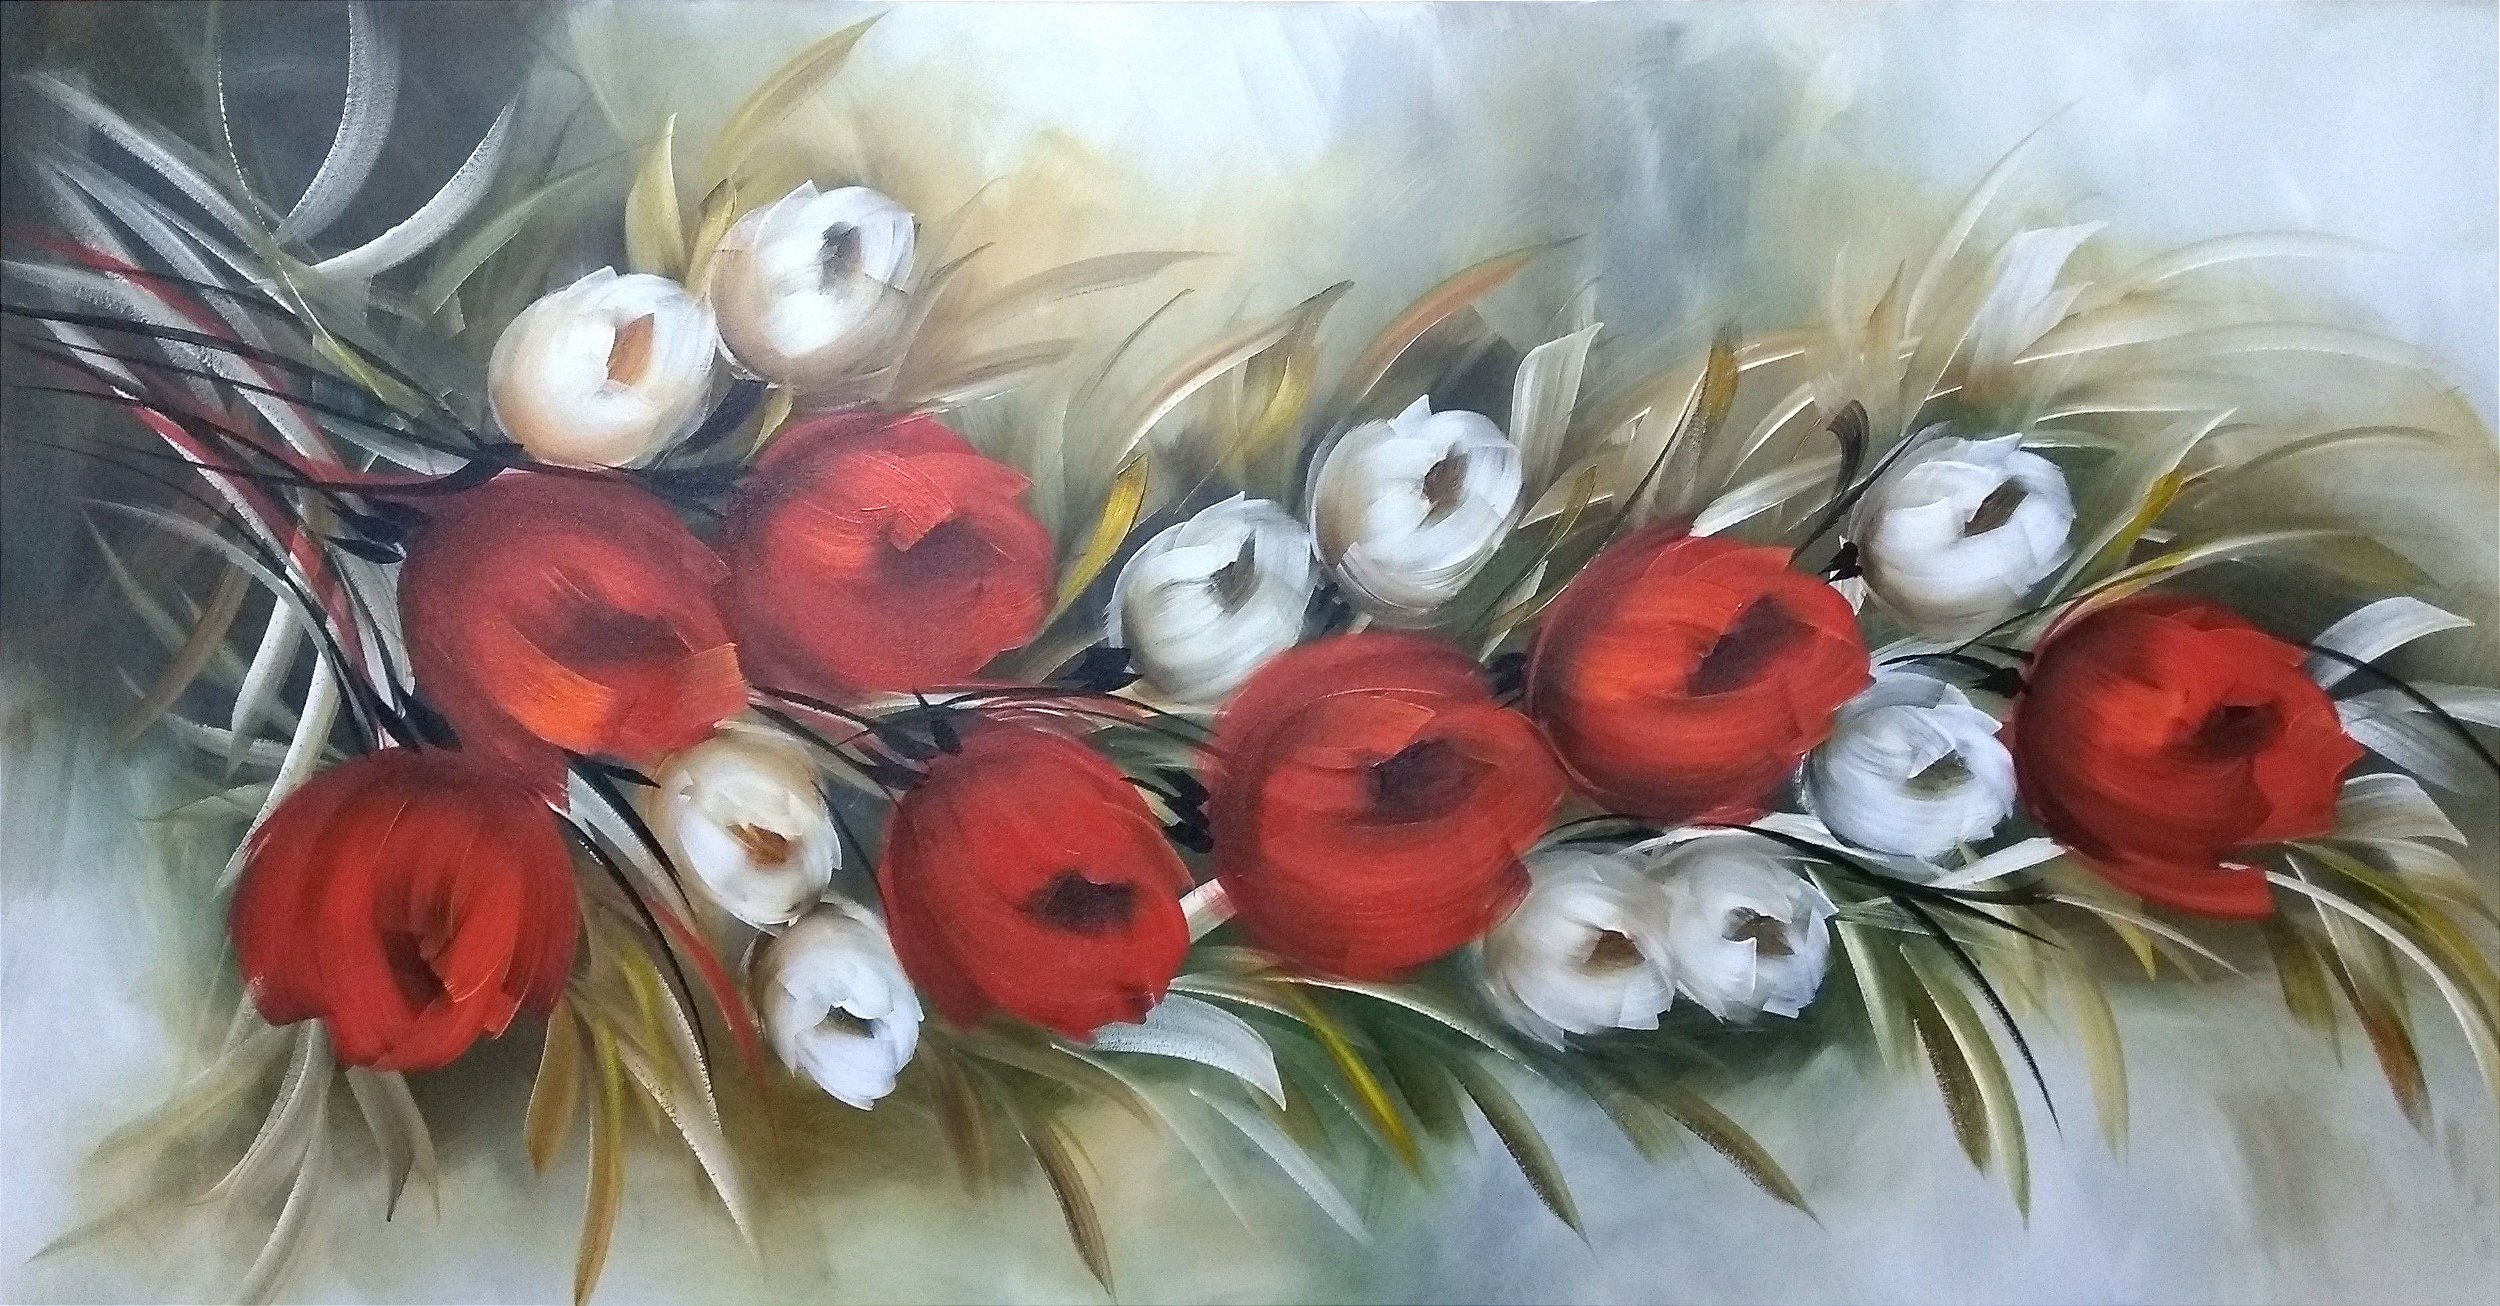 Pintura/Quadro/Tela floral, galho de tulipas vermelhas com botões bran -  Fer Amantéa Galeria de Artes